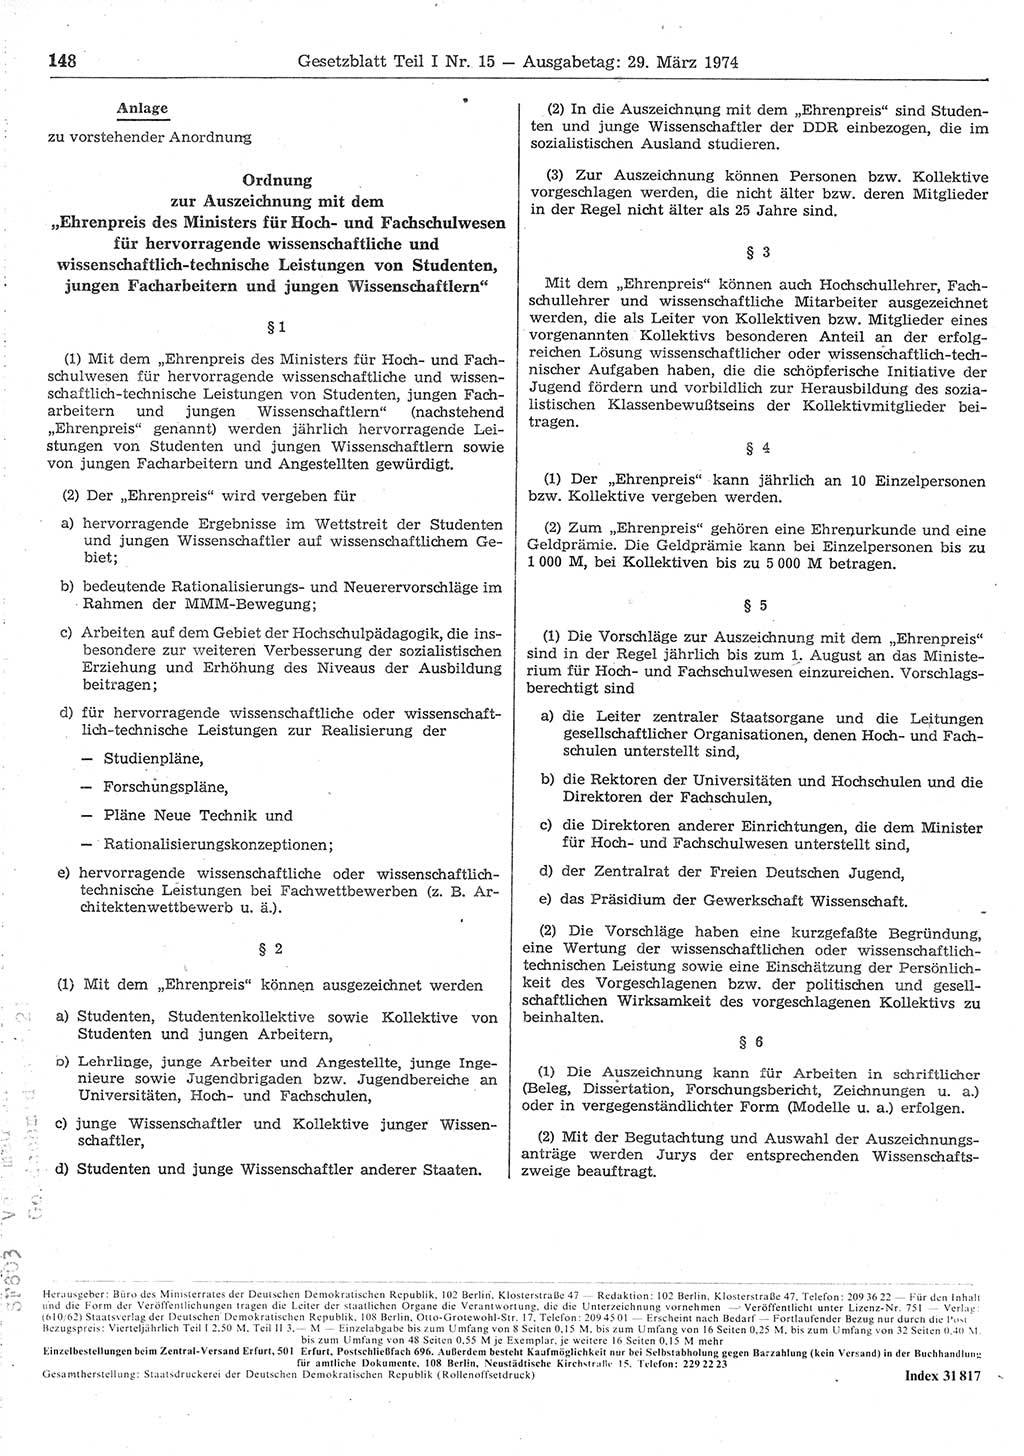 Gesetzblatt (GBl.) der Deutschen Demokratischen Republik (DDR) Teil Ⅰ 1974, Seite 148 (GBl. DDR Ⅰ 1974, S. 148)